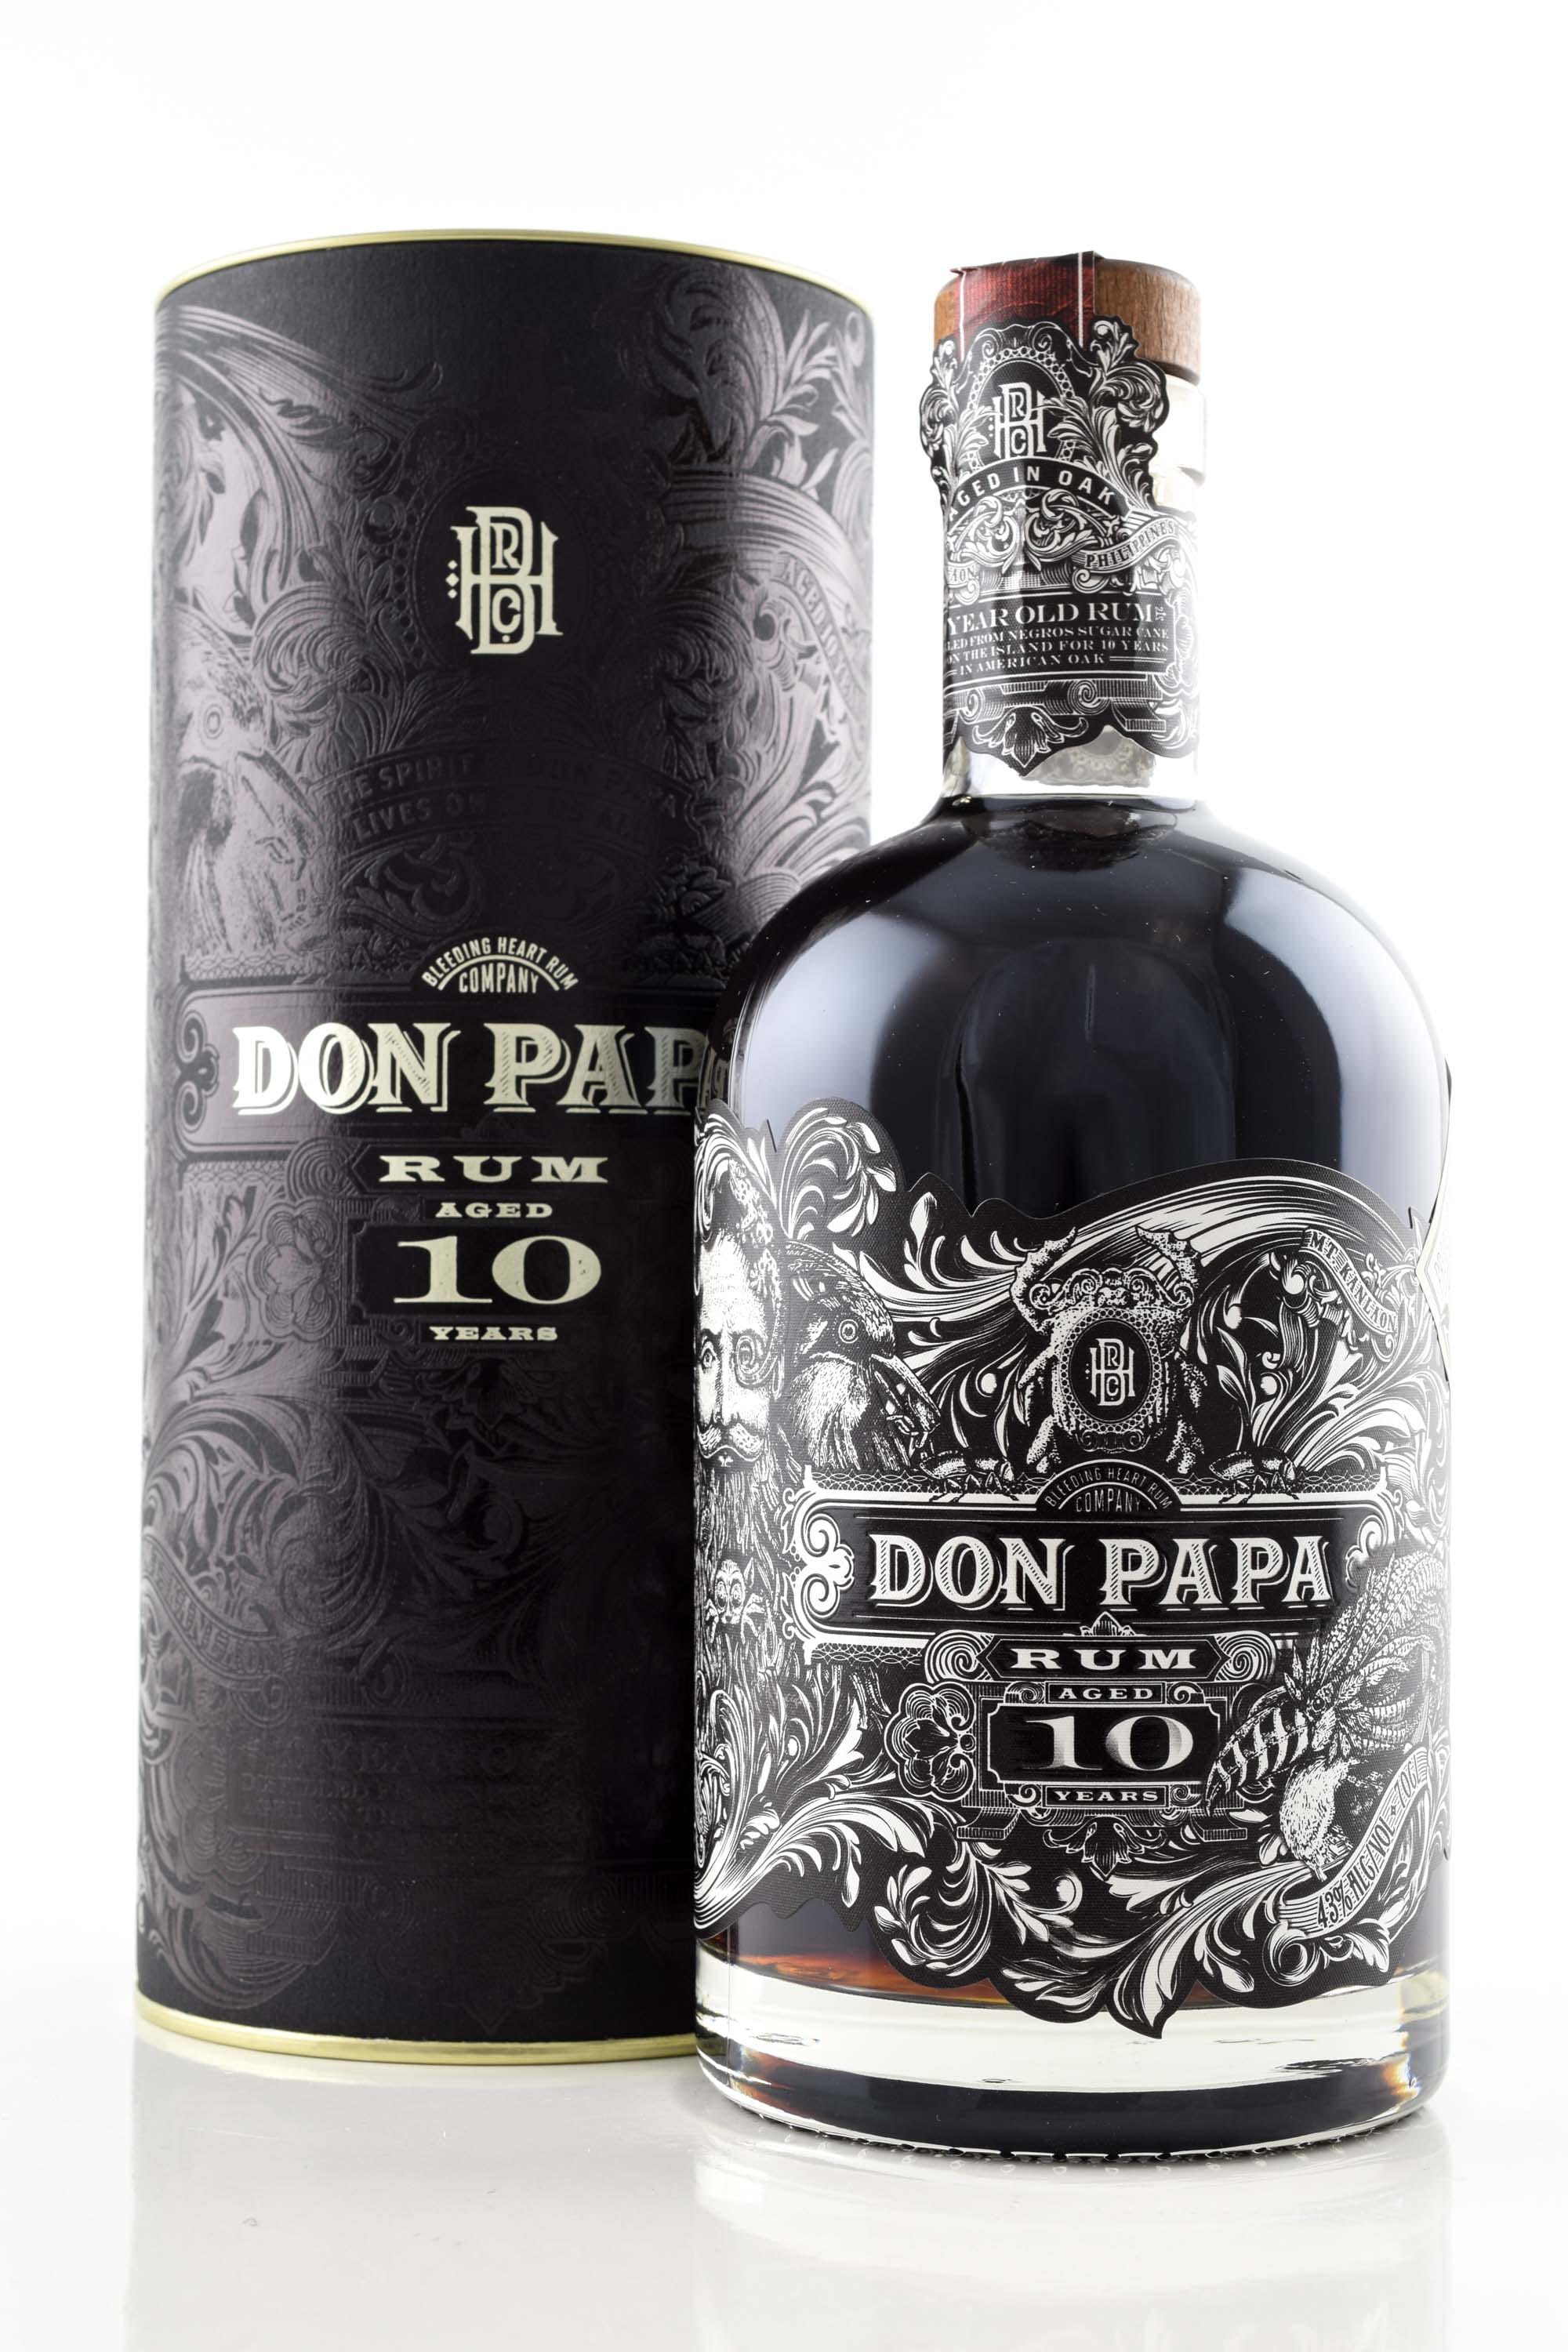 Don Papa 10 | | 43% vol. Old Rum - metal Malts type 0.7l Rum Home of | lid | Rum Year by